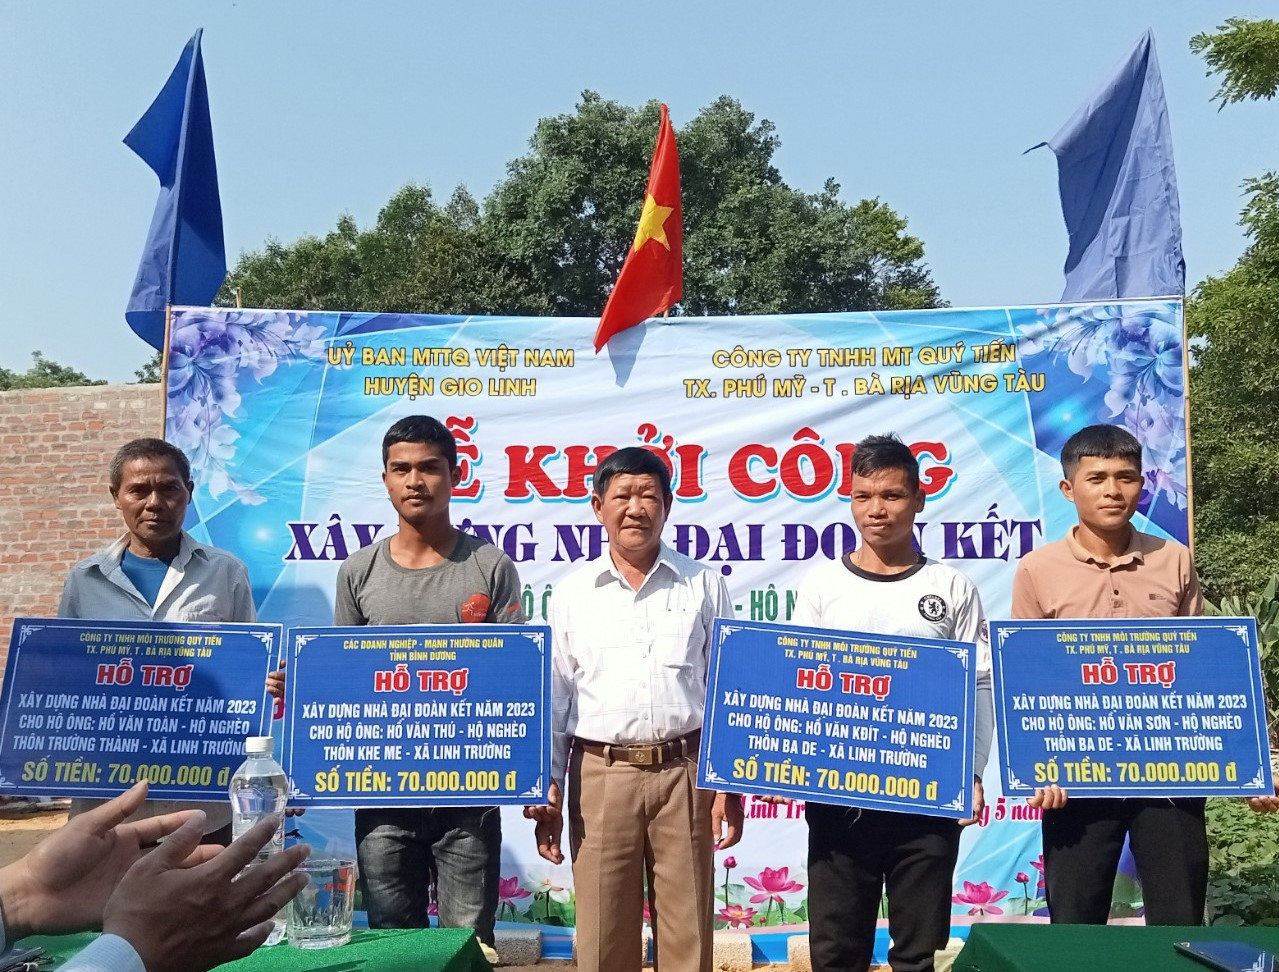 Ủy ban MTTQ Việt Nam huyện Gio Linh tổ chức lễ khởi công xây nhà Đại đoàn kết cho 4 hộ nghèo tại xã Linh Trường.